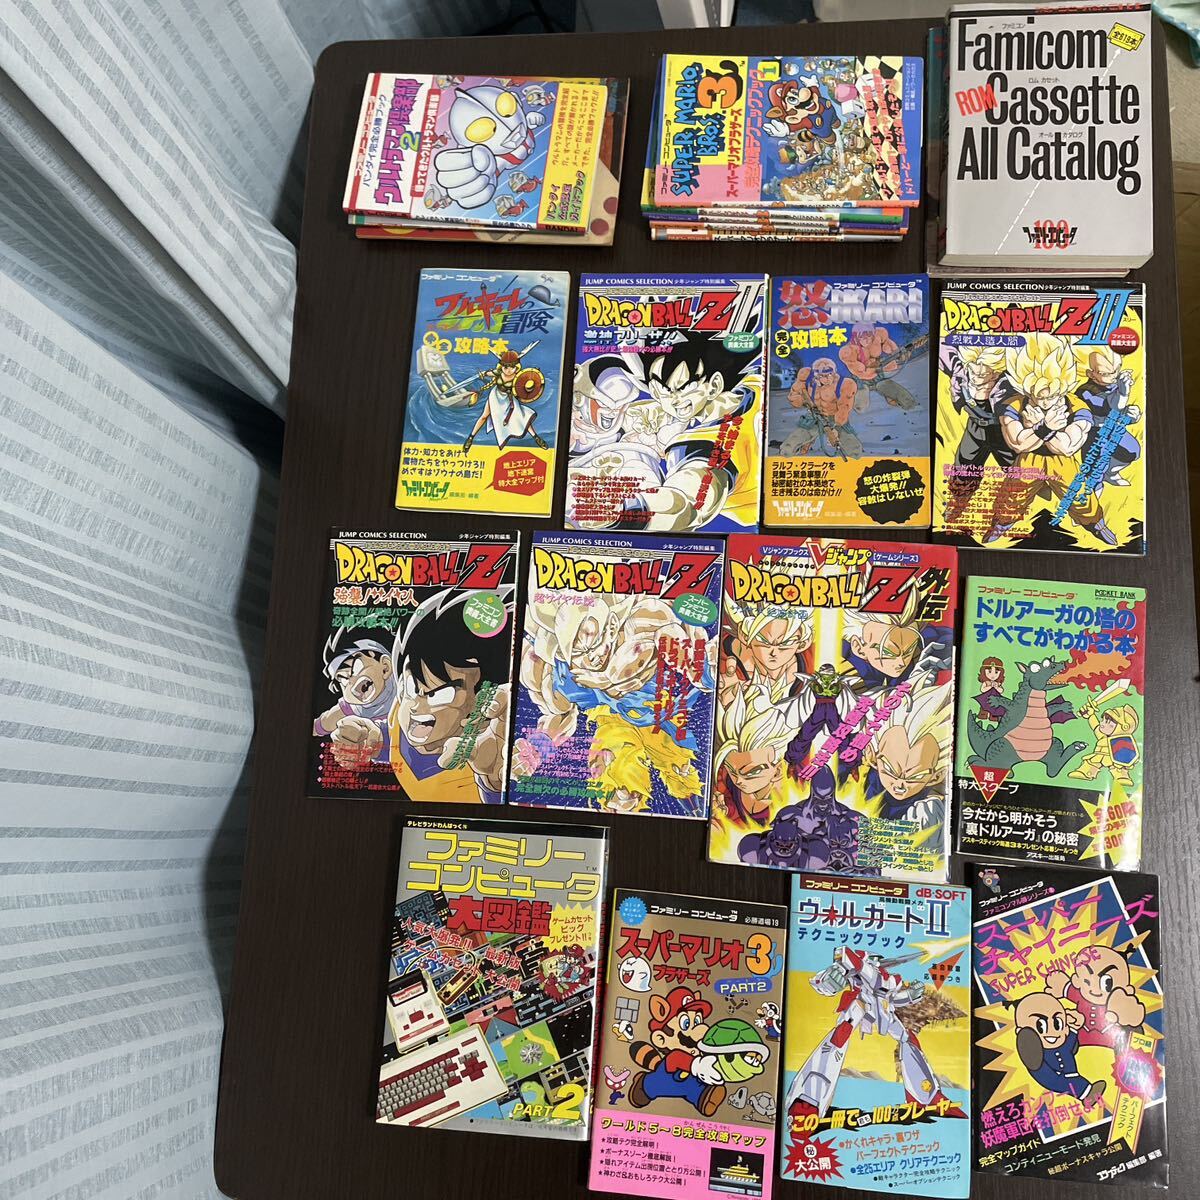  Famicom soft гид и т.п. 24 шт.. Dragon Ball Z,do искусственная приманка ga, Valkyrie, super Mario и т.п. / Shueisha, добродетель промежуток книжный магазин, ASCII и т.п. 